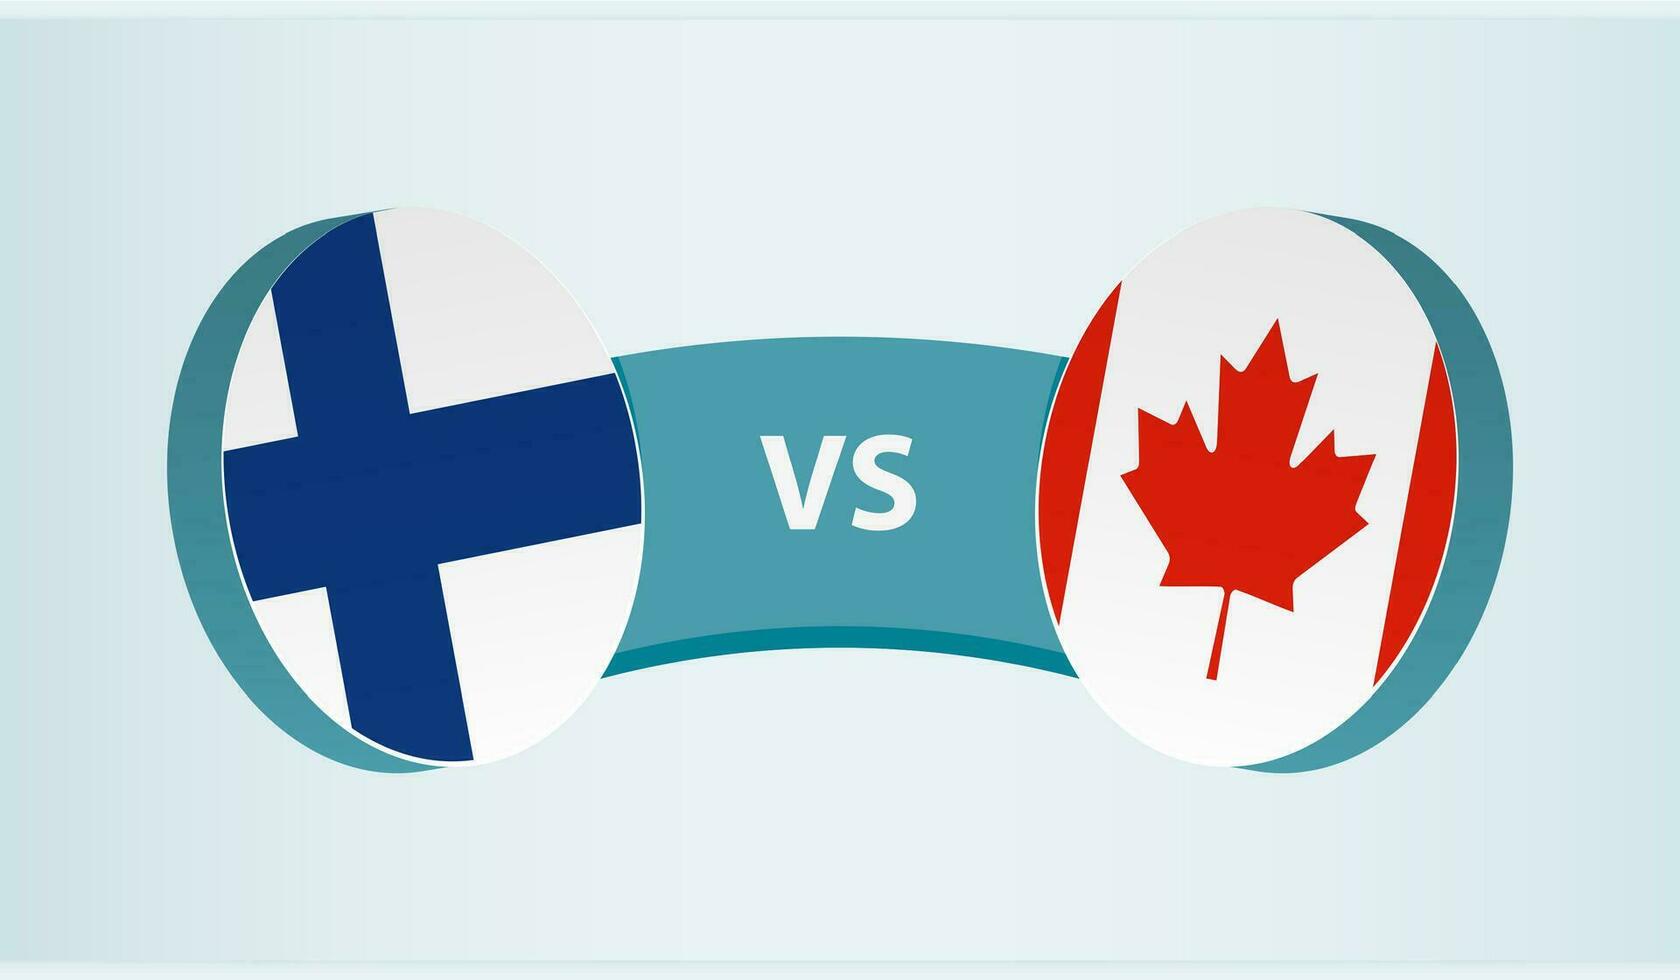 finland mot Kanada, team sporter konkurrens begrepp. vektor